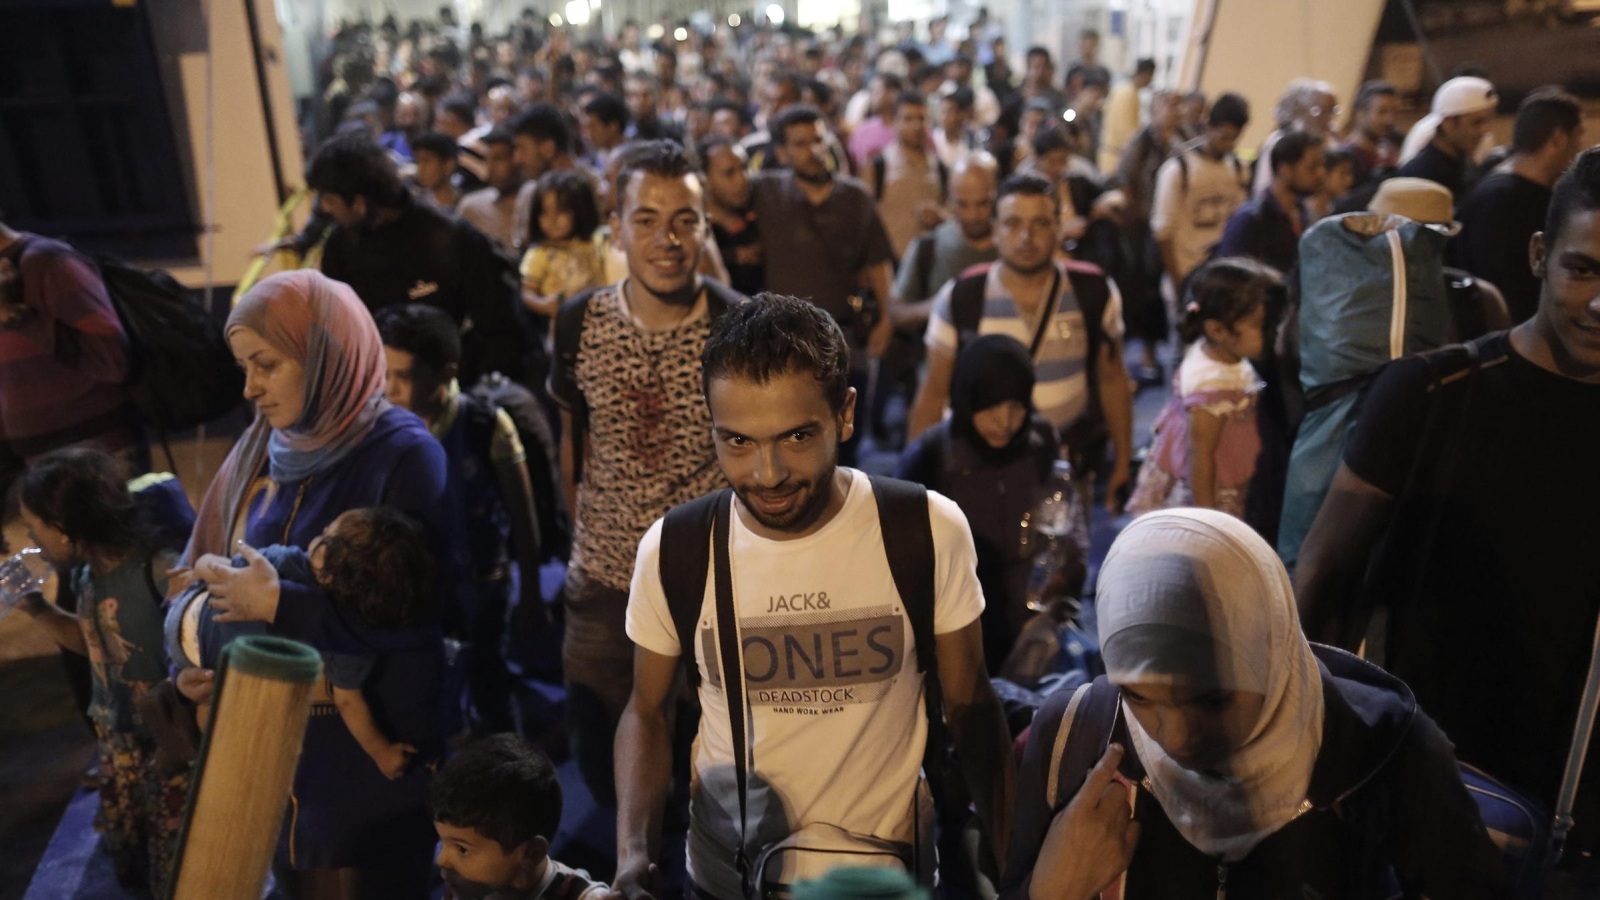 مئات اللاجئين -جلهم من سوريا- يصلون يوميا إلى سواحل الجزر اليونانية القريبة من تركيا(الأوروبية)